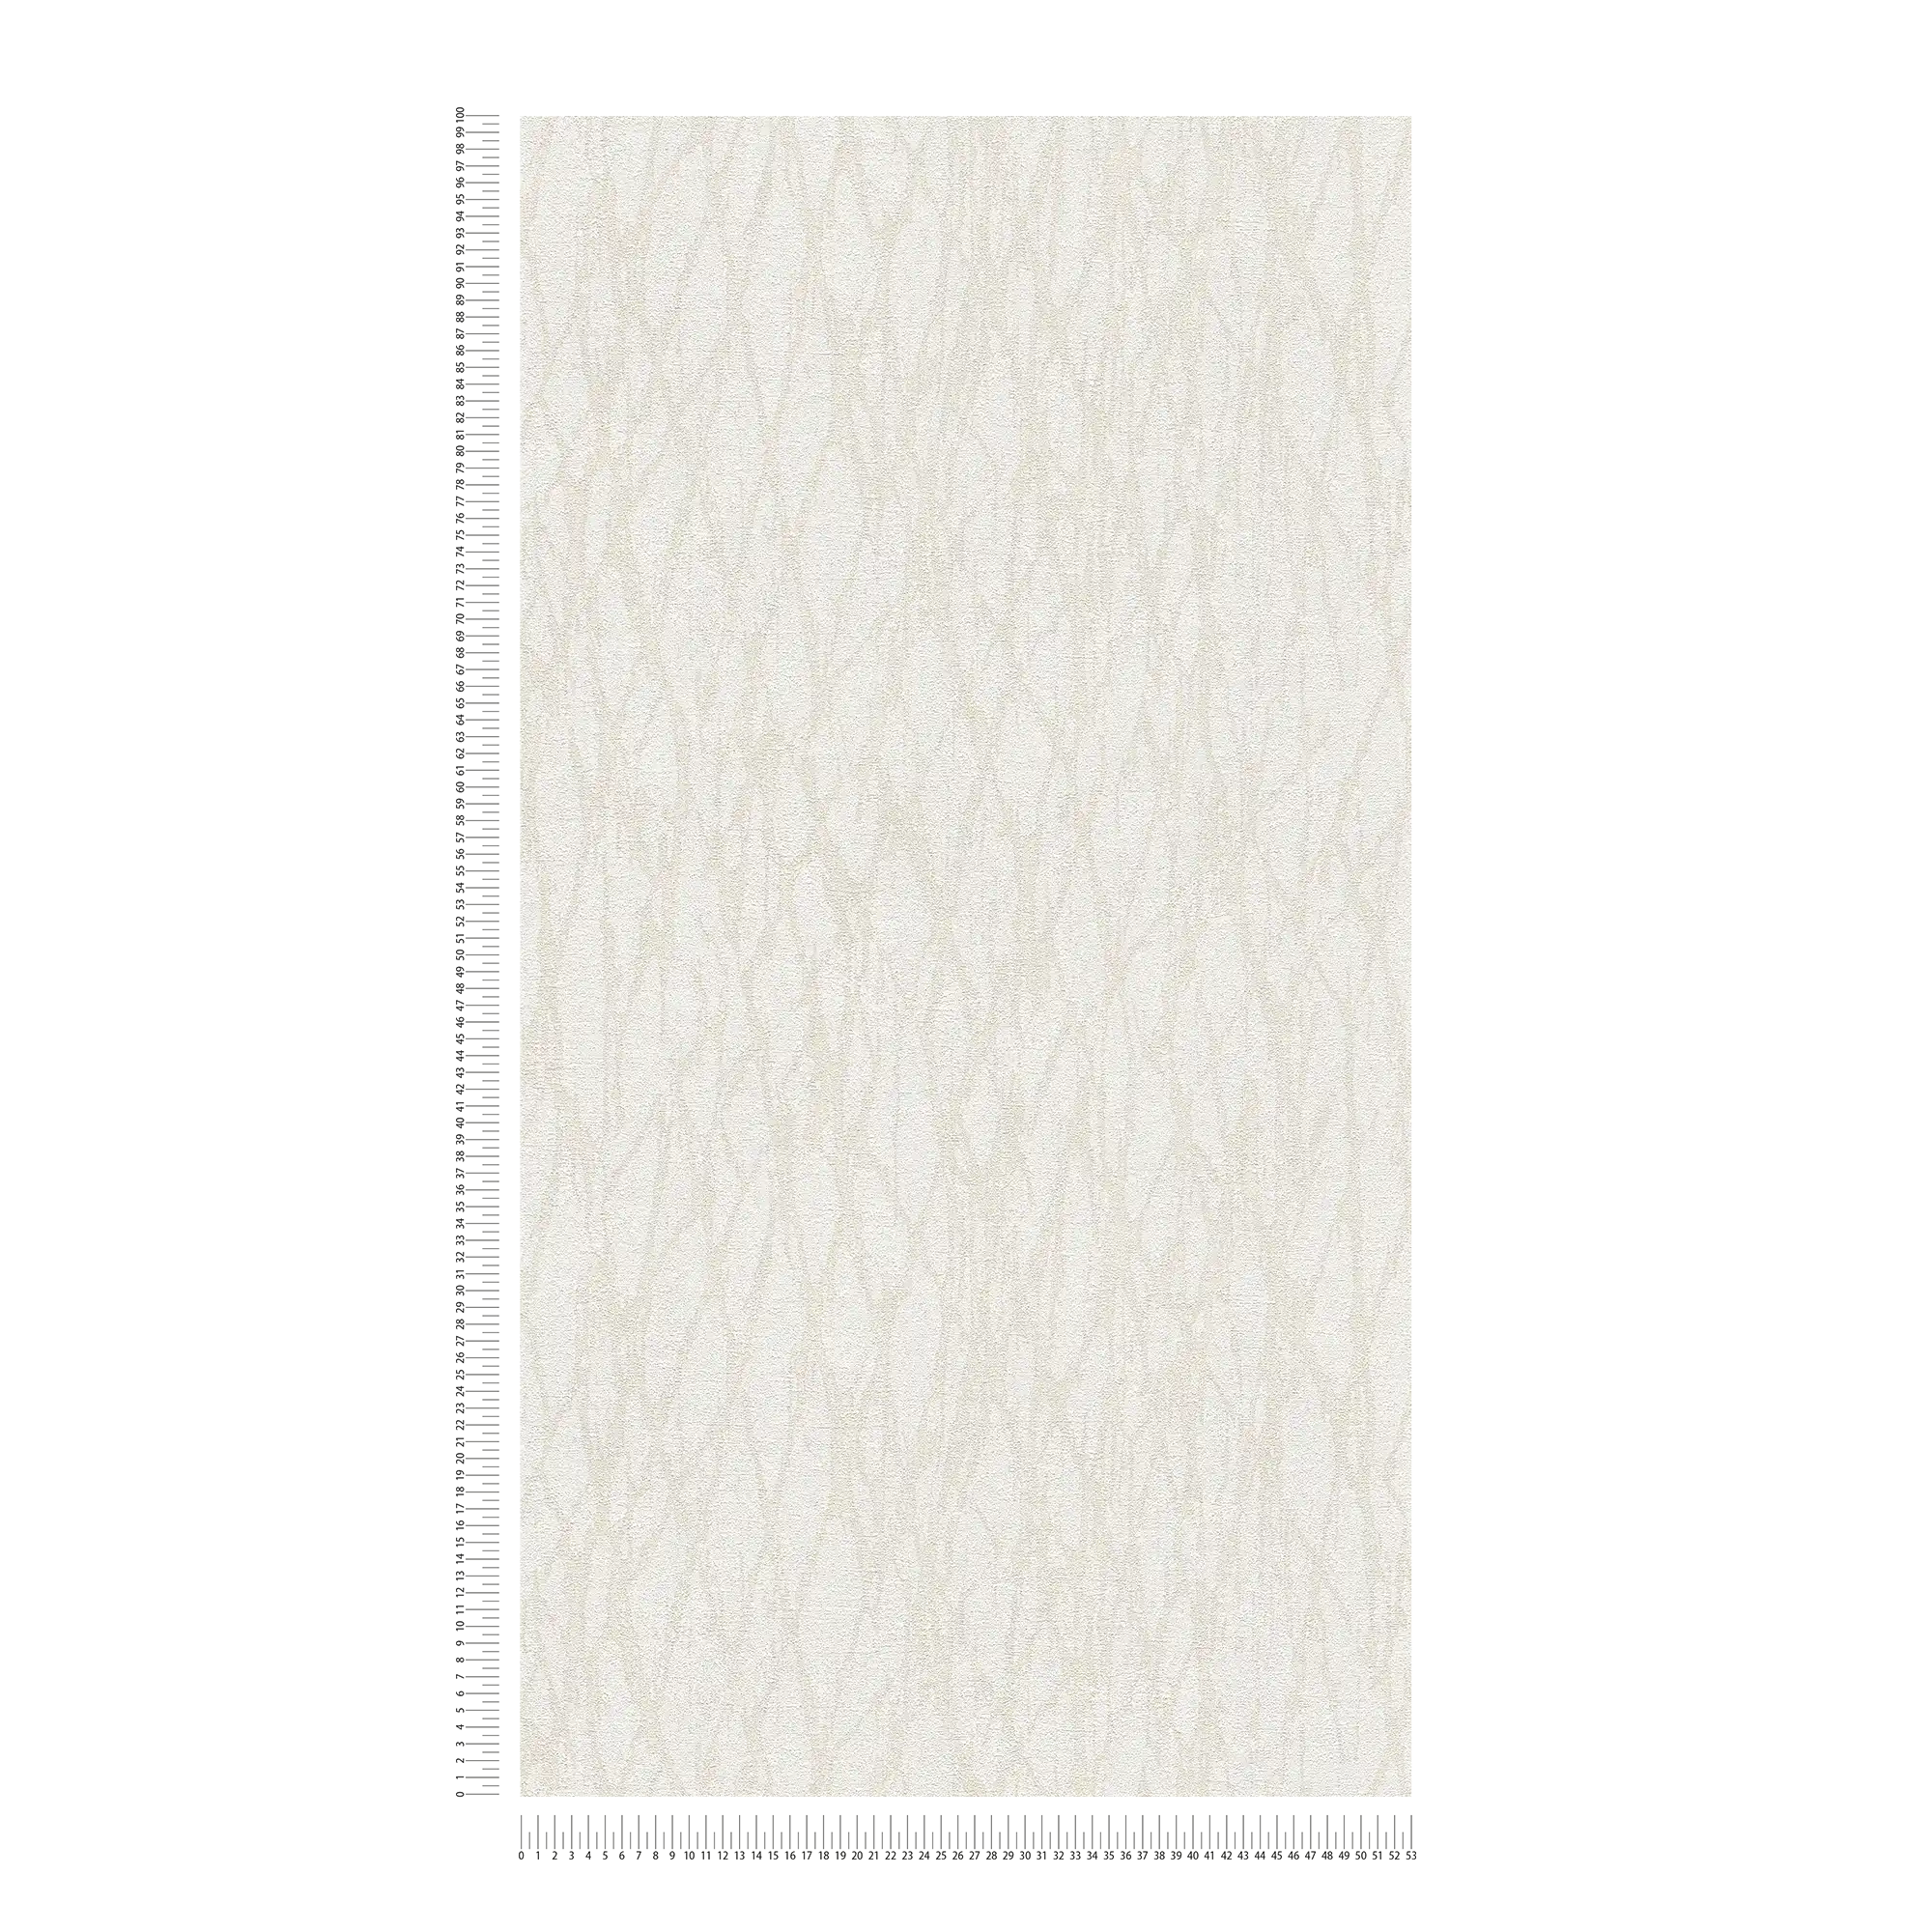             Vliesbehang met abstract lijnenpatroon - wit, beige, crème
        